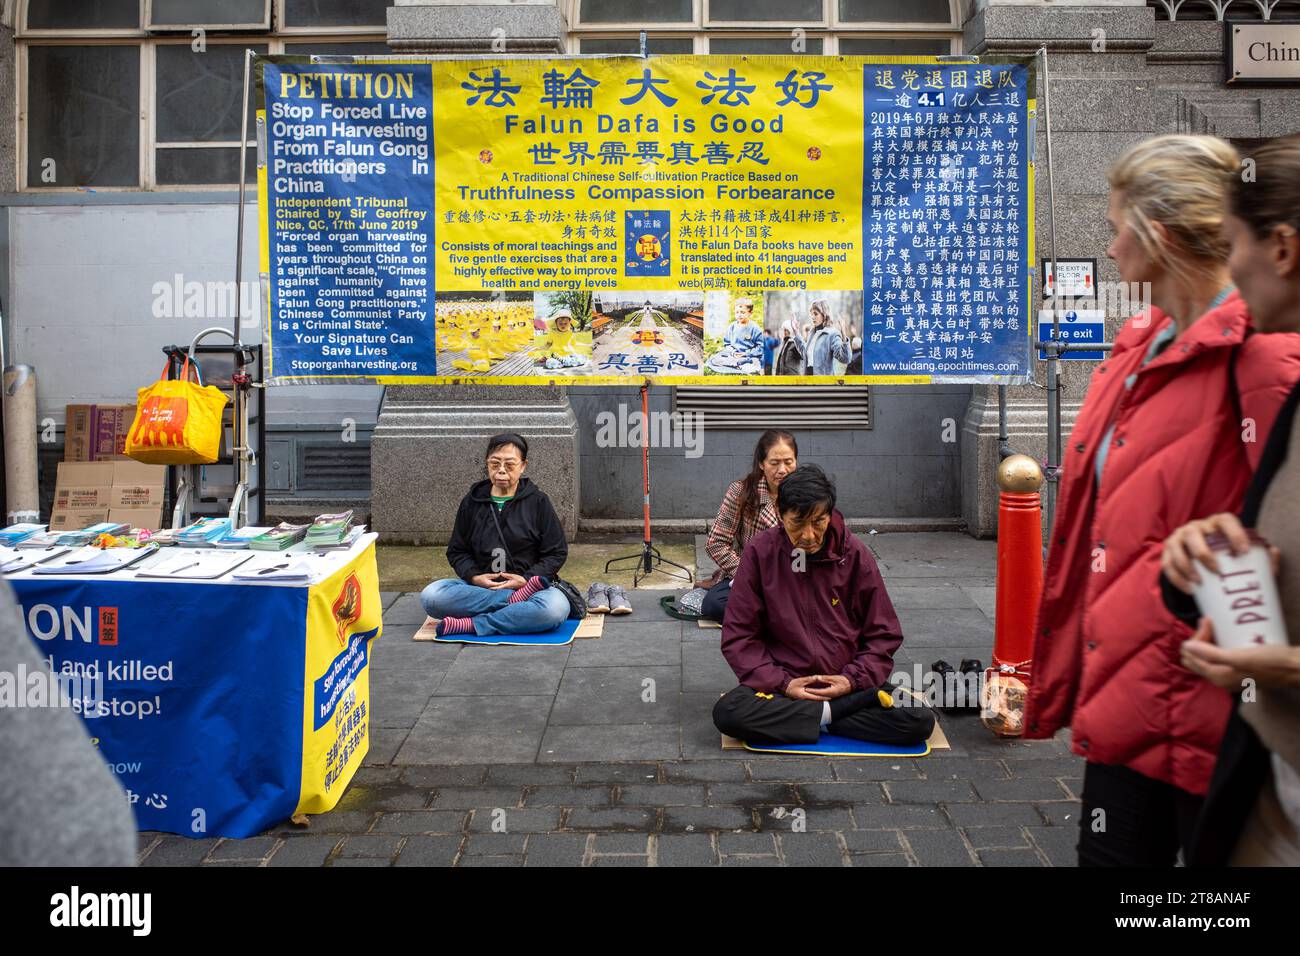 Les gens pratiquent la méditation Falun Gong ou Falun Dafa dans la rue à china Town, à Londres, pour protester contre le prélèvement forcé d'organes en Chine. Banque D'Images